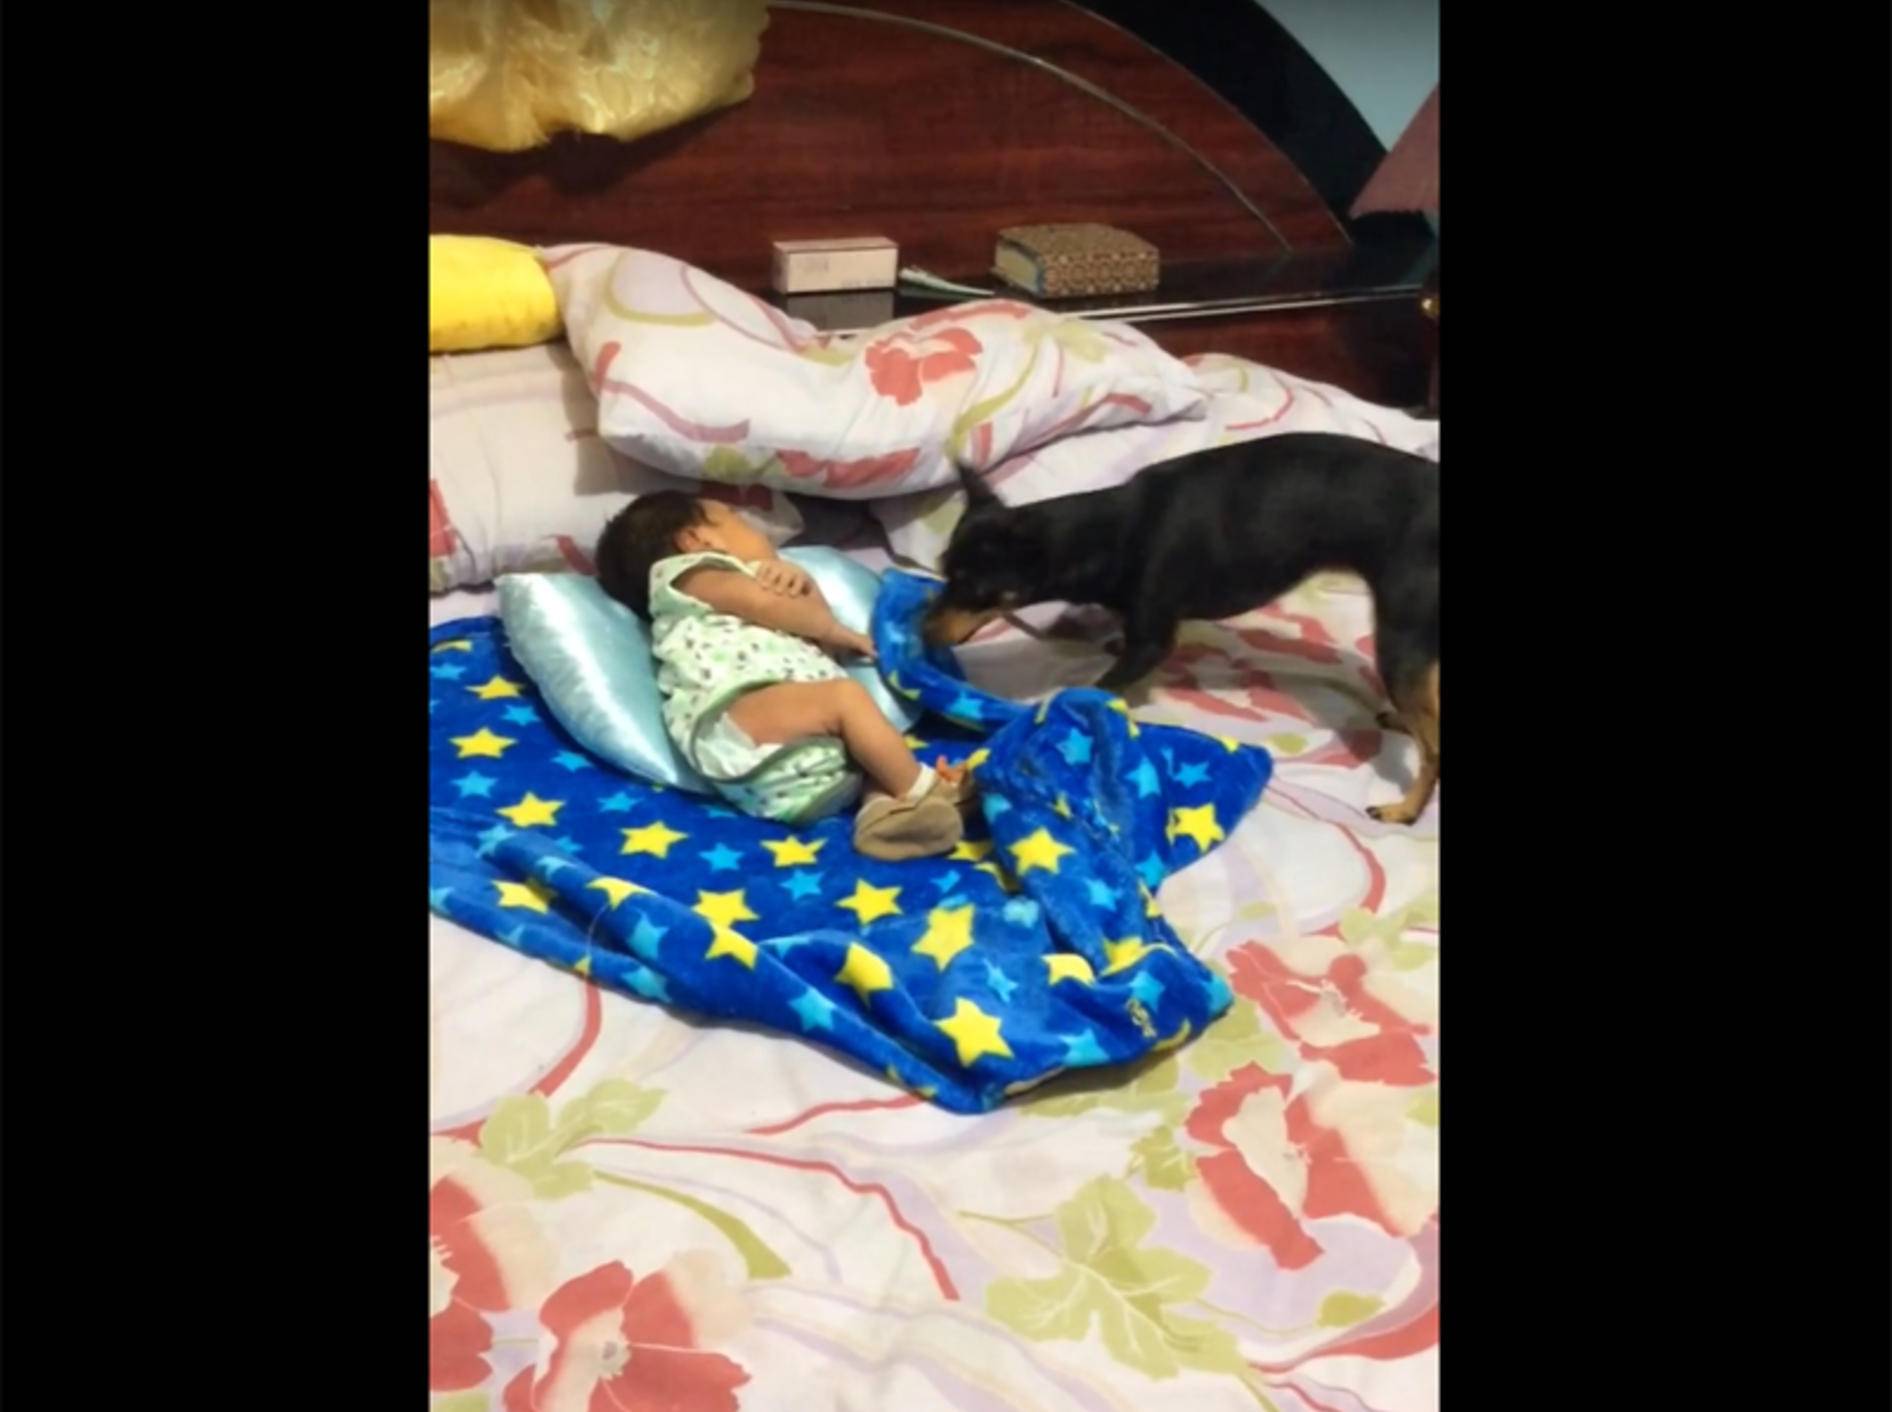 Fürsorglicher Hund deckt Baby liebevoll zu – YouTube / ViralHog